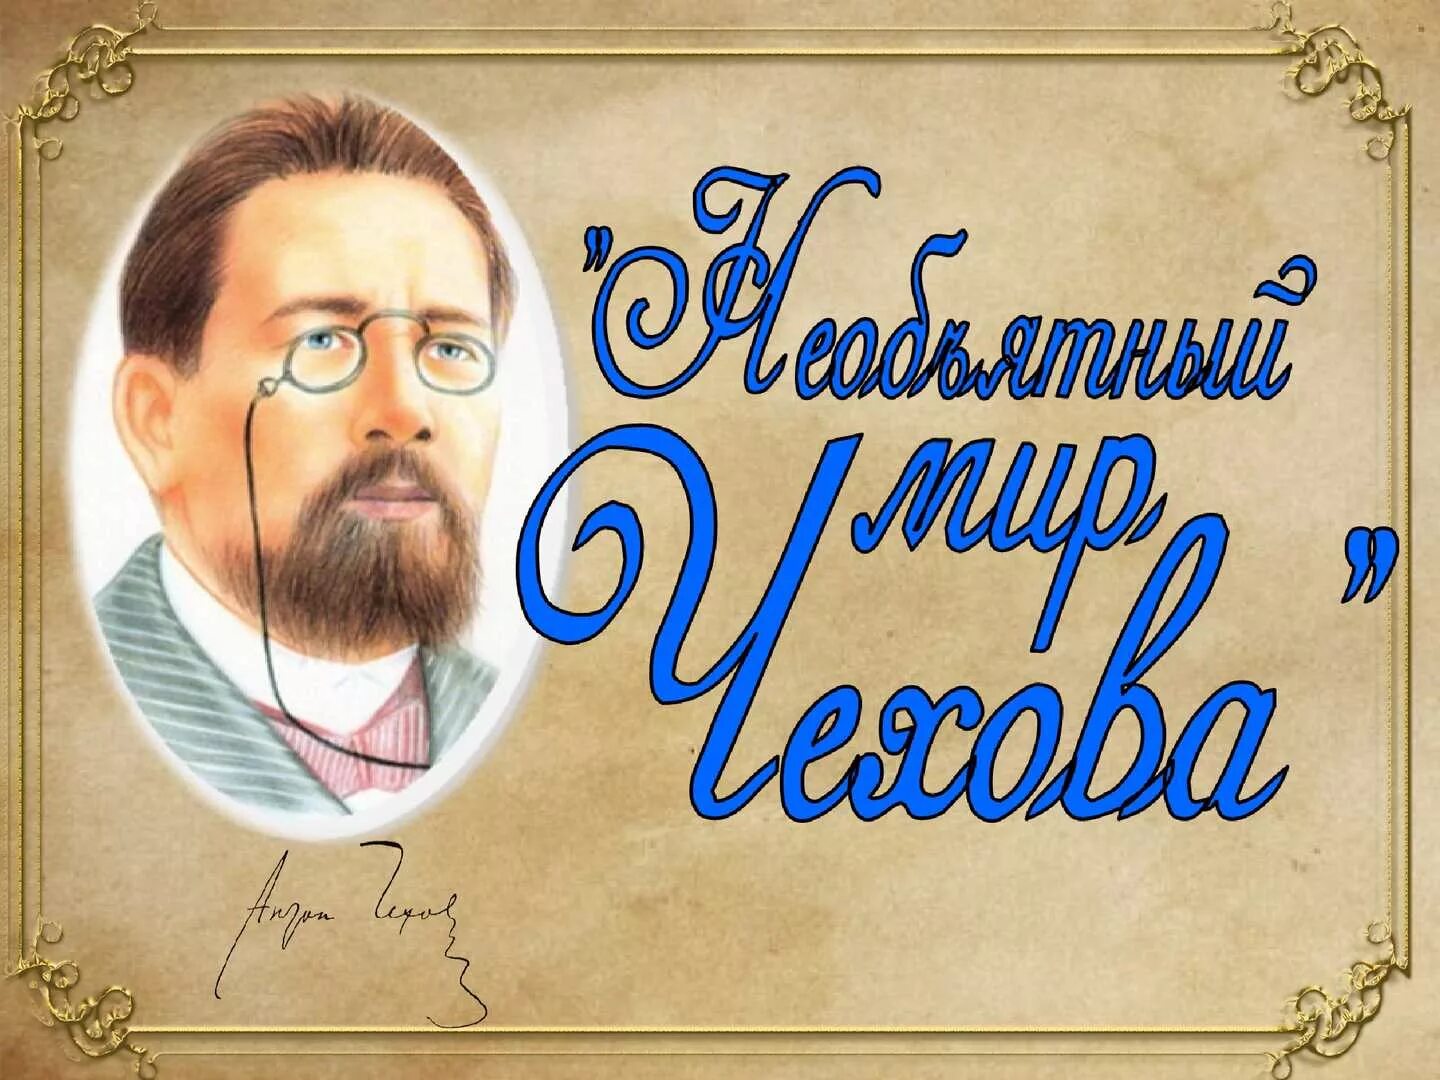 День рождения русского писателя Антона Павловича Чехова (1860-1904).